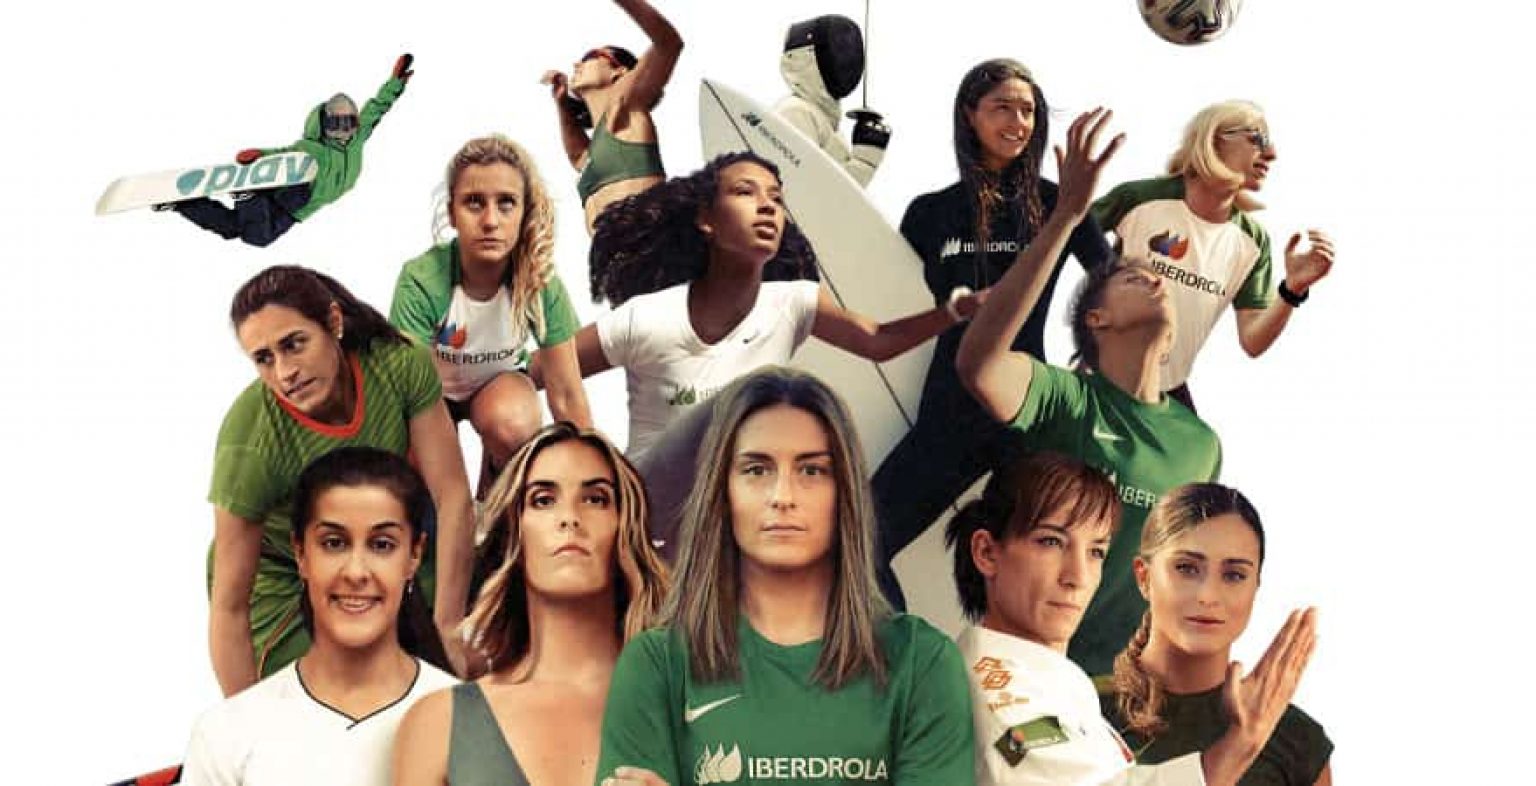 Iberdrola igualdad género, varias jugadoras de distintos deportes apoyados por iberdrola